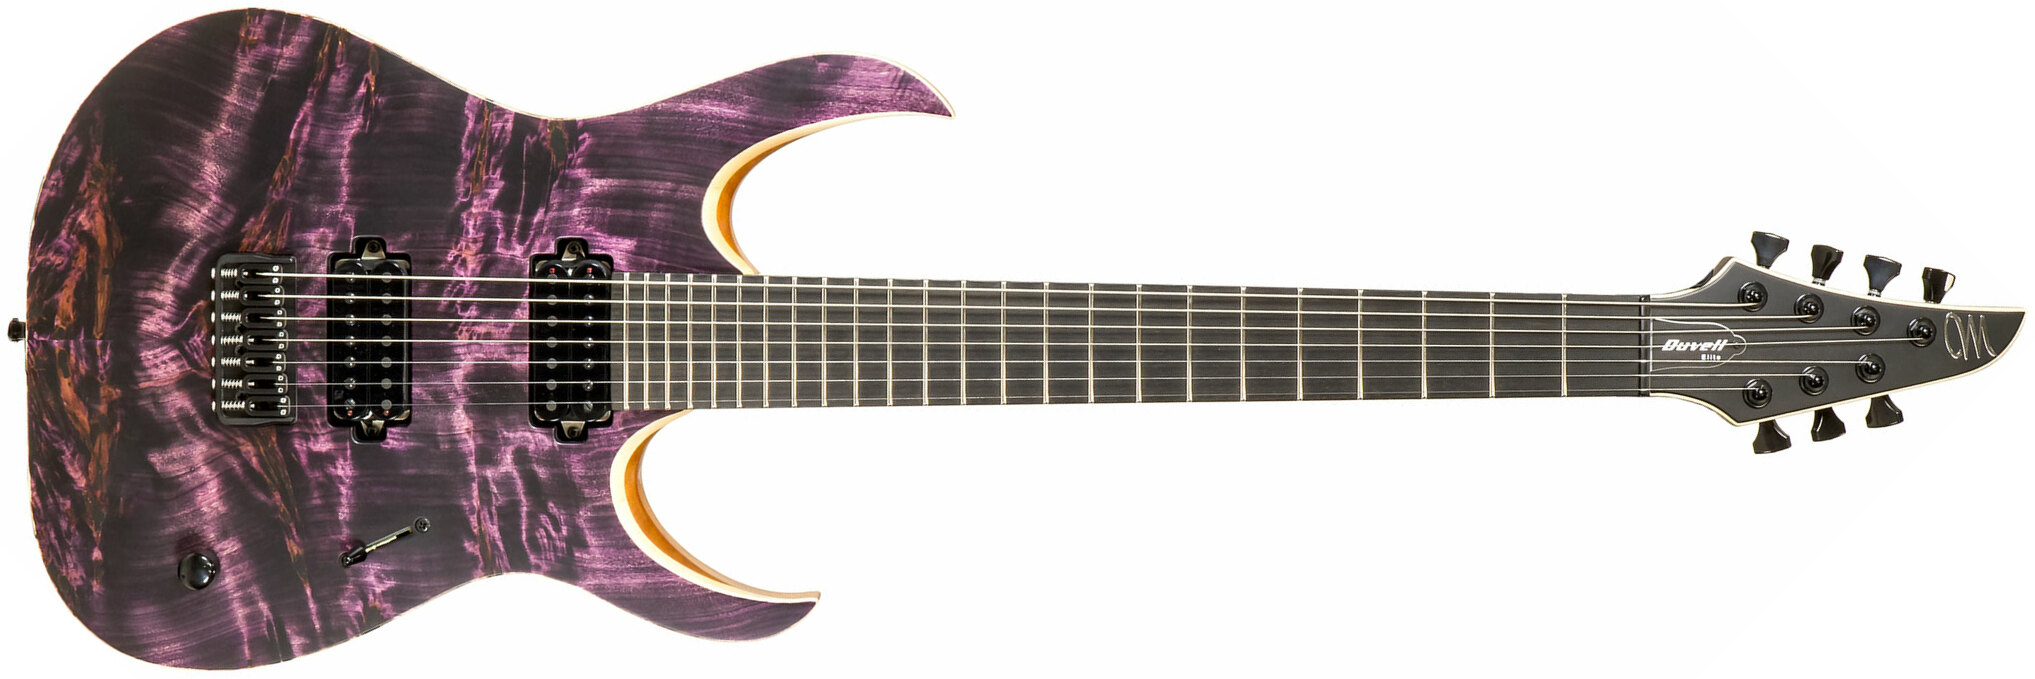 Mayones Guitars Duvell Elite 7c 2h Seymour Duncan Ht Eb #df2009194 - Dirty Purple - Guitarra eléctrica de 7 cuerdas - Main picture